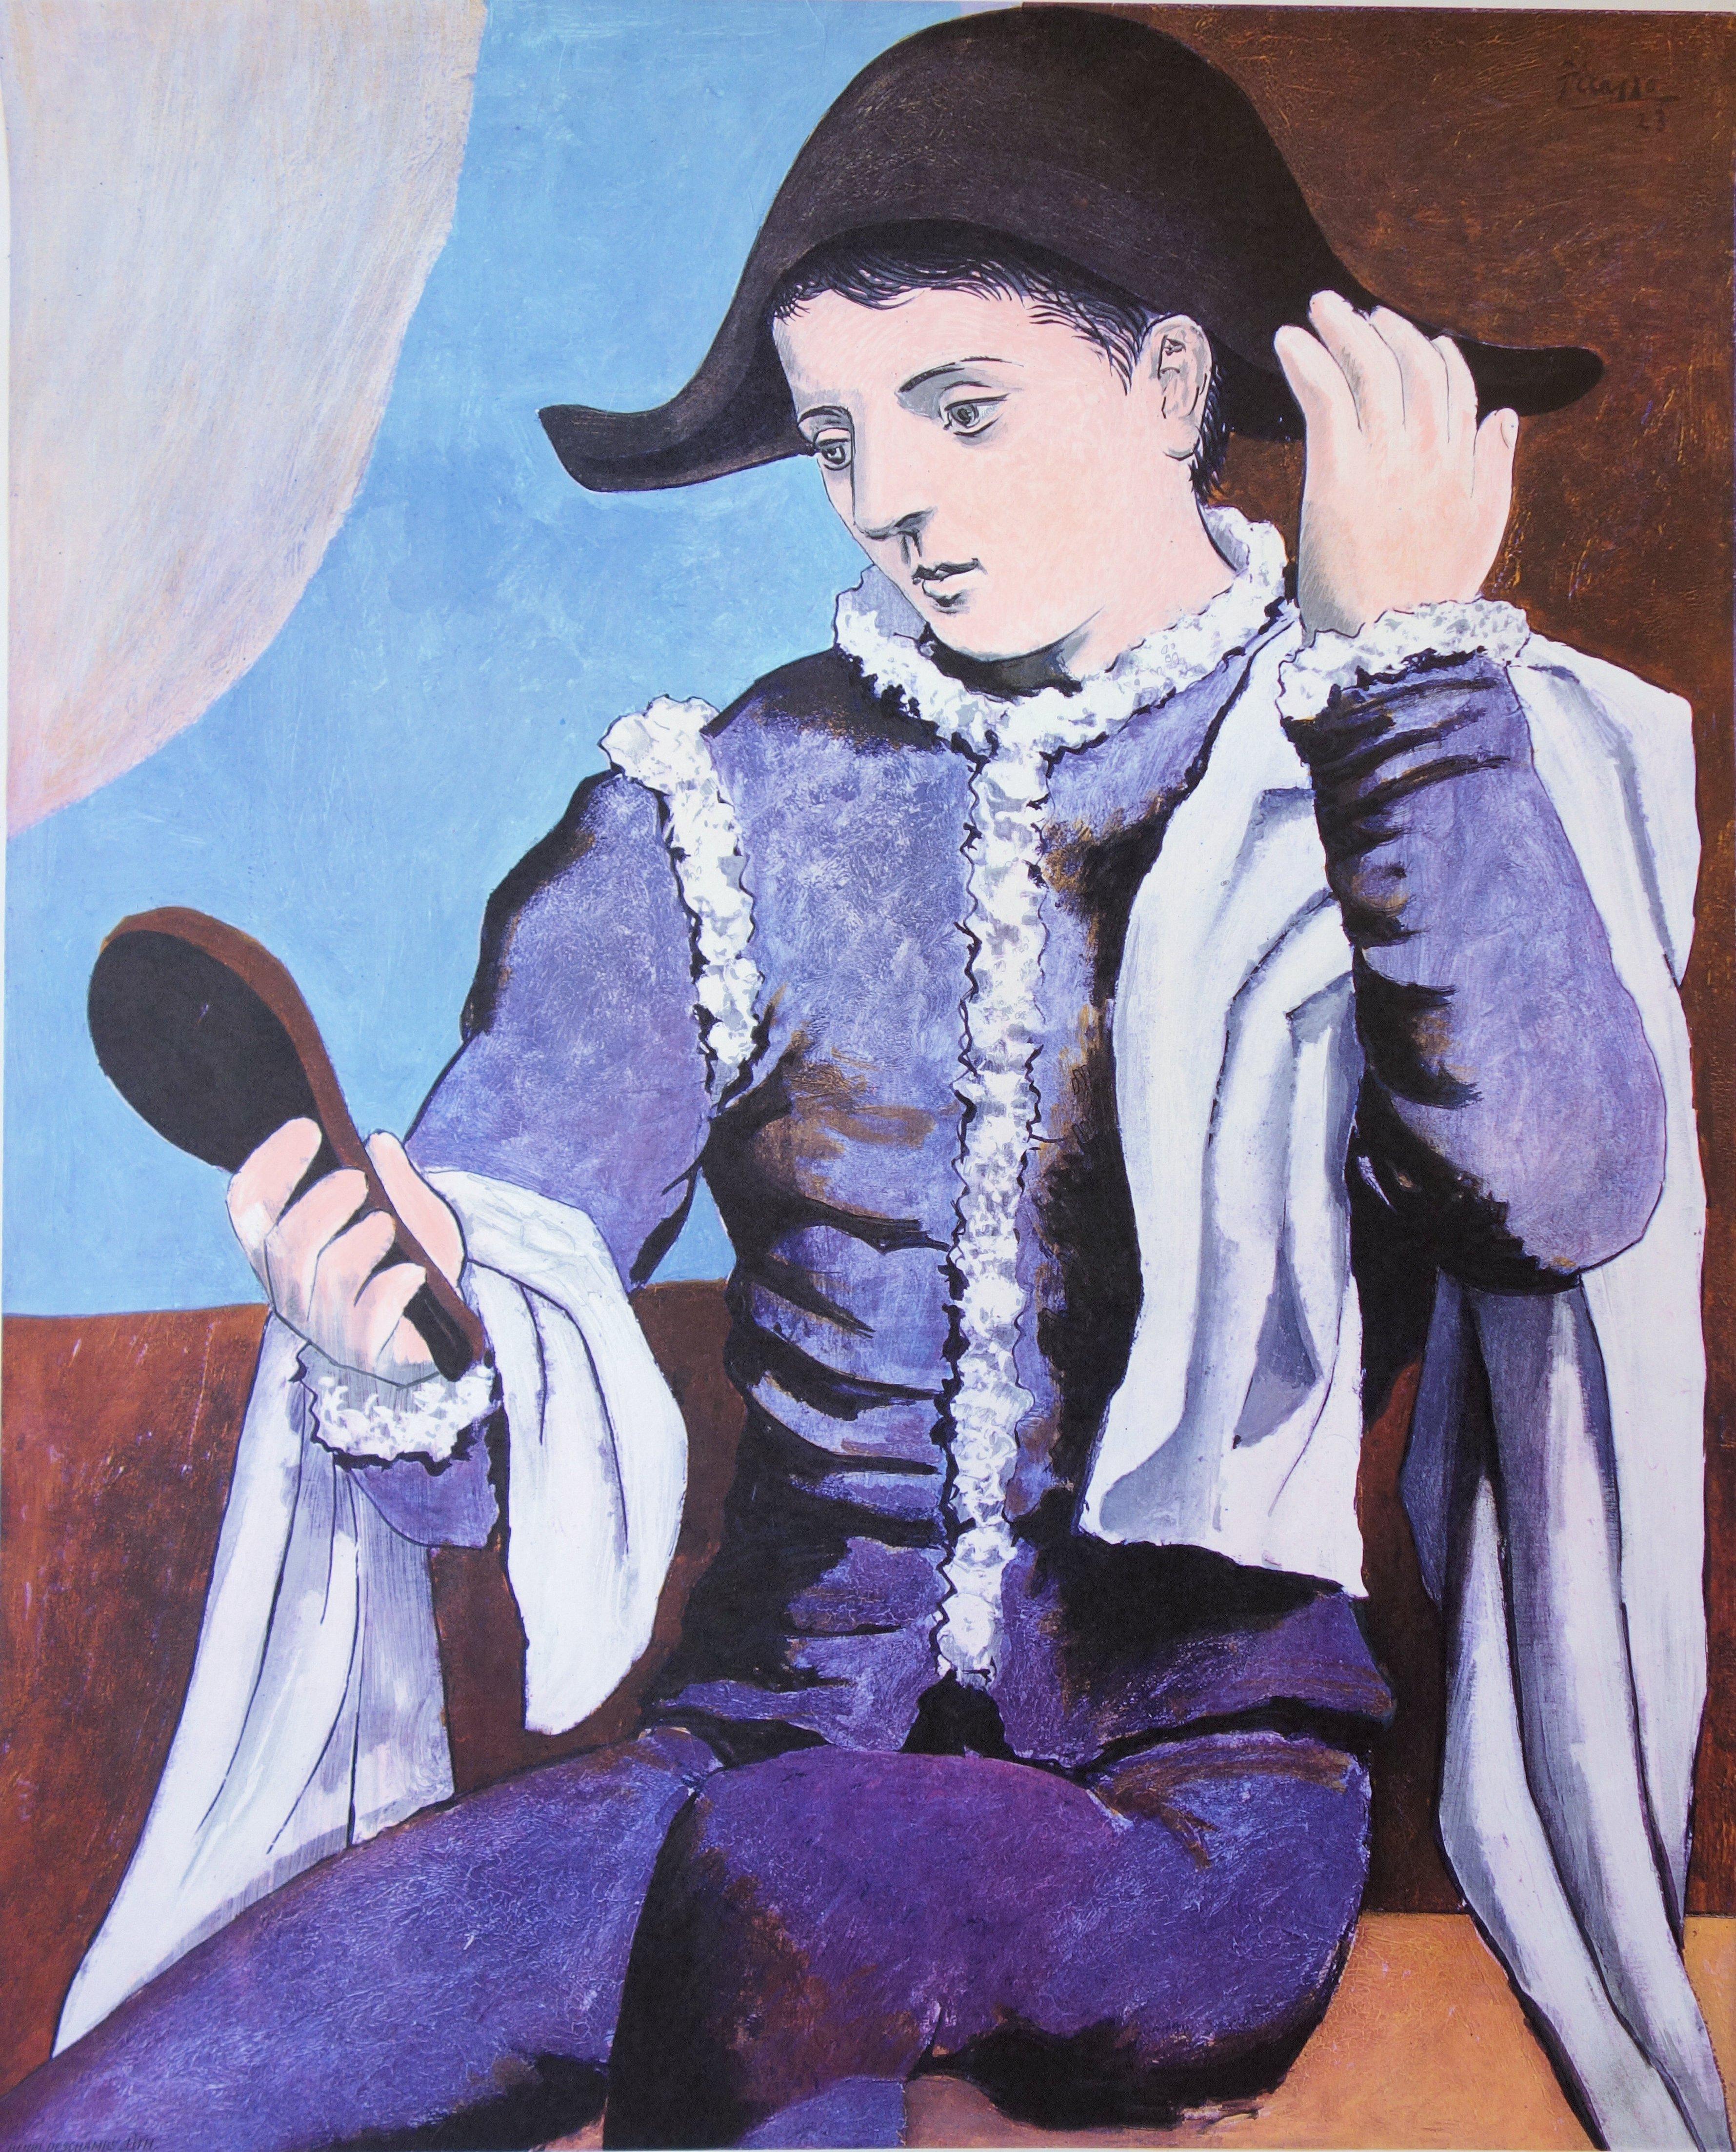 Harlequin avec un miroir - Affiche lithographique vintage (Mourlot) - Czwiklitzer #424 - Print de (after) Pablo Picasso